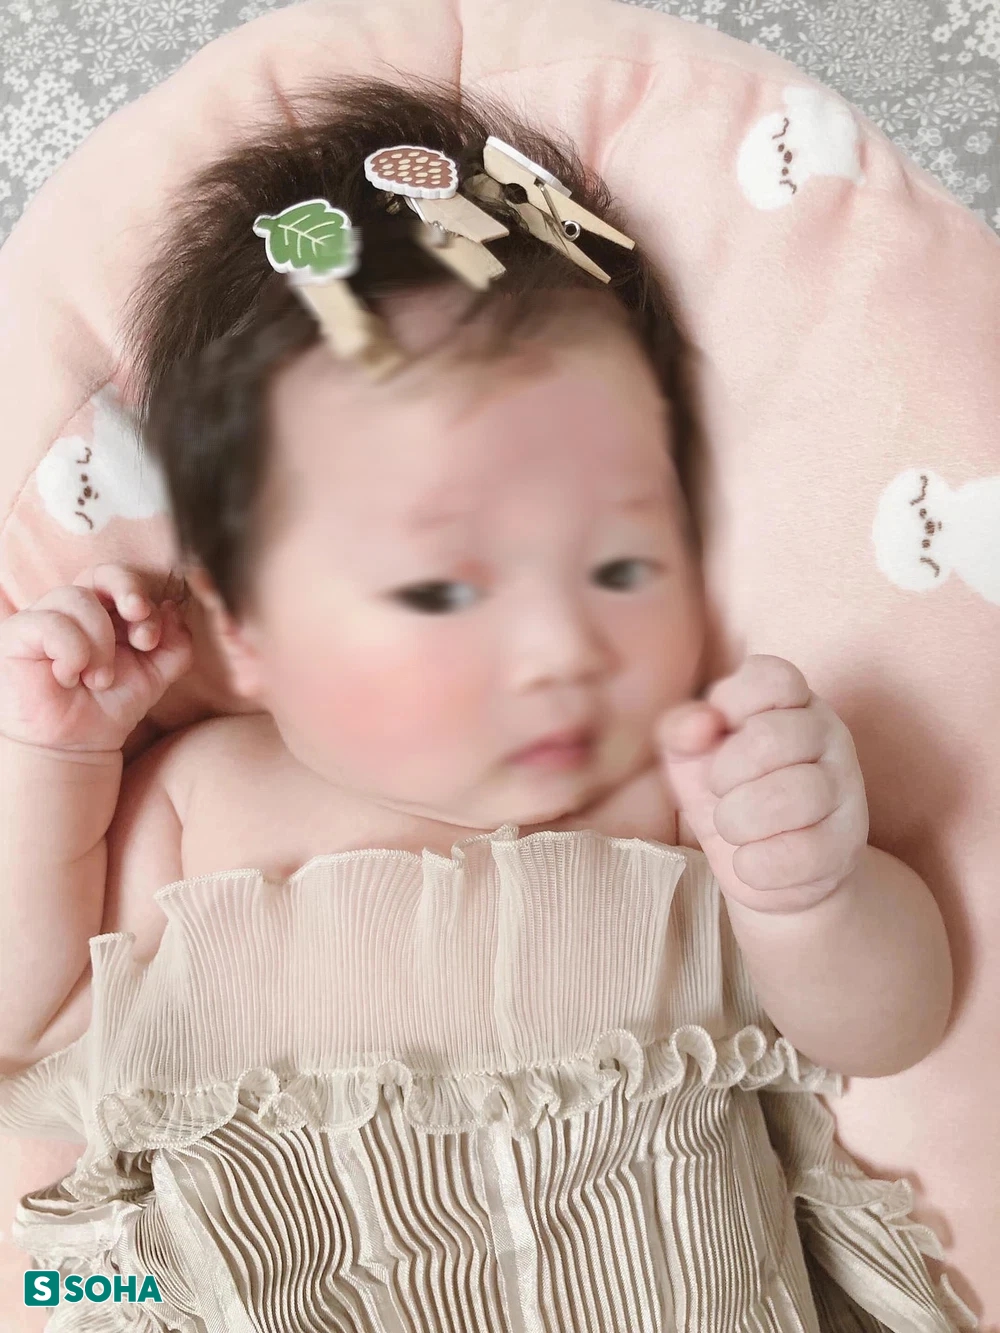 Nữ nhân viên tiệm tóc cưa đổ bạn Hàn Quốc của ông chủ, sinh con gái xinh như thiên thần - Ảnh 4.